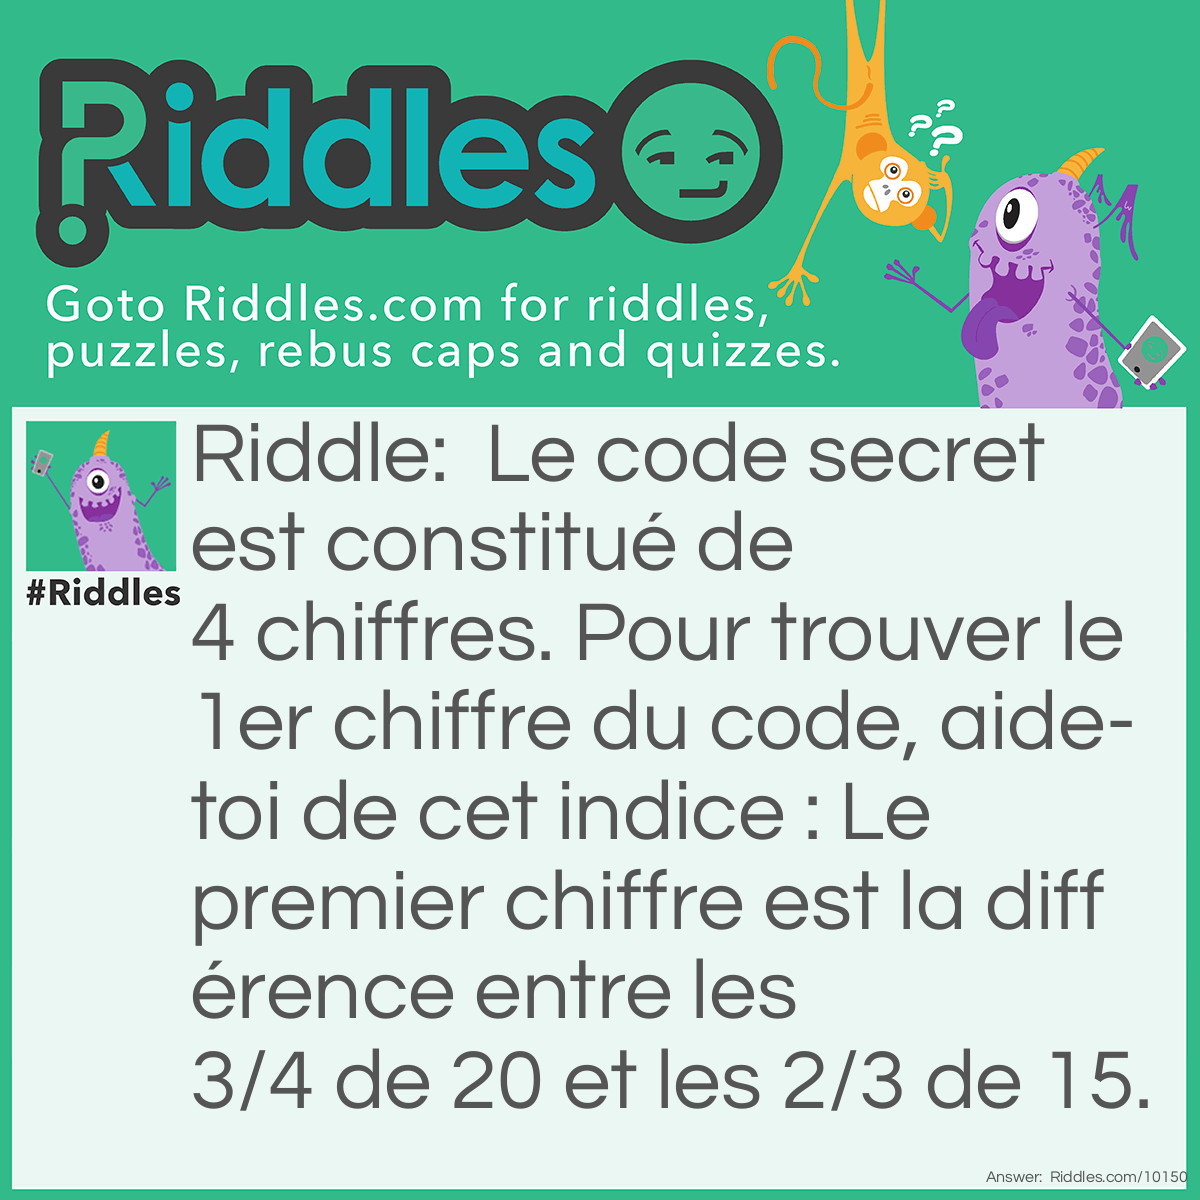 Riddle: Le code secret est constitué de 4 chiffres. Pour trouver le 1er chiffre du code, aide-toi de cet indice : Le premier chiffre est la différence entre les 3/4 de 20 et les 2/3 de 15. Answer: Réponse = 5